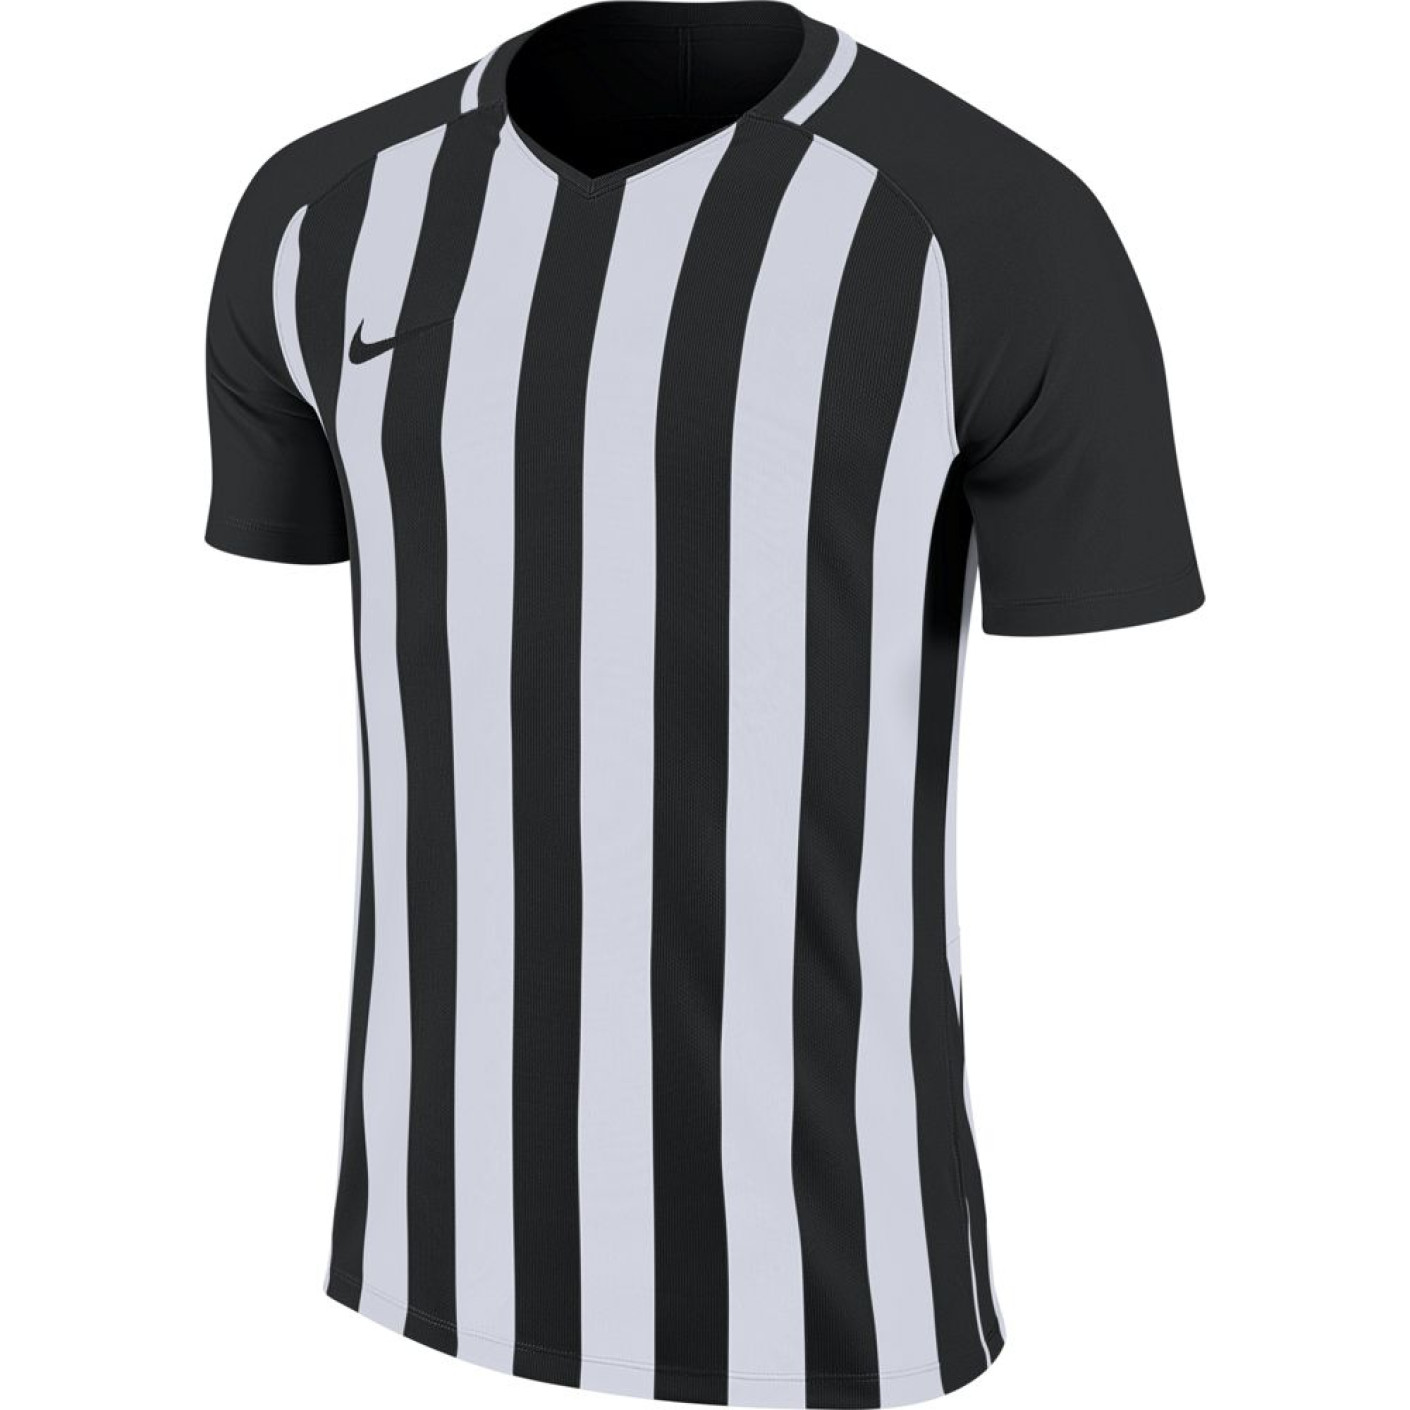 Gaan Kliniek Pef Nike Striped Division III Voetbalshirt Zwart Wit